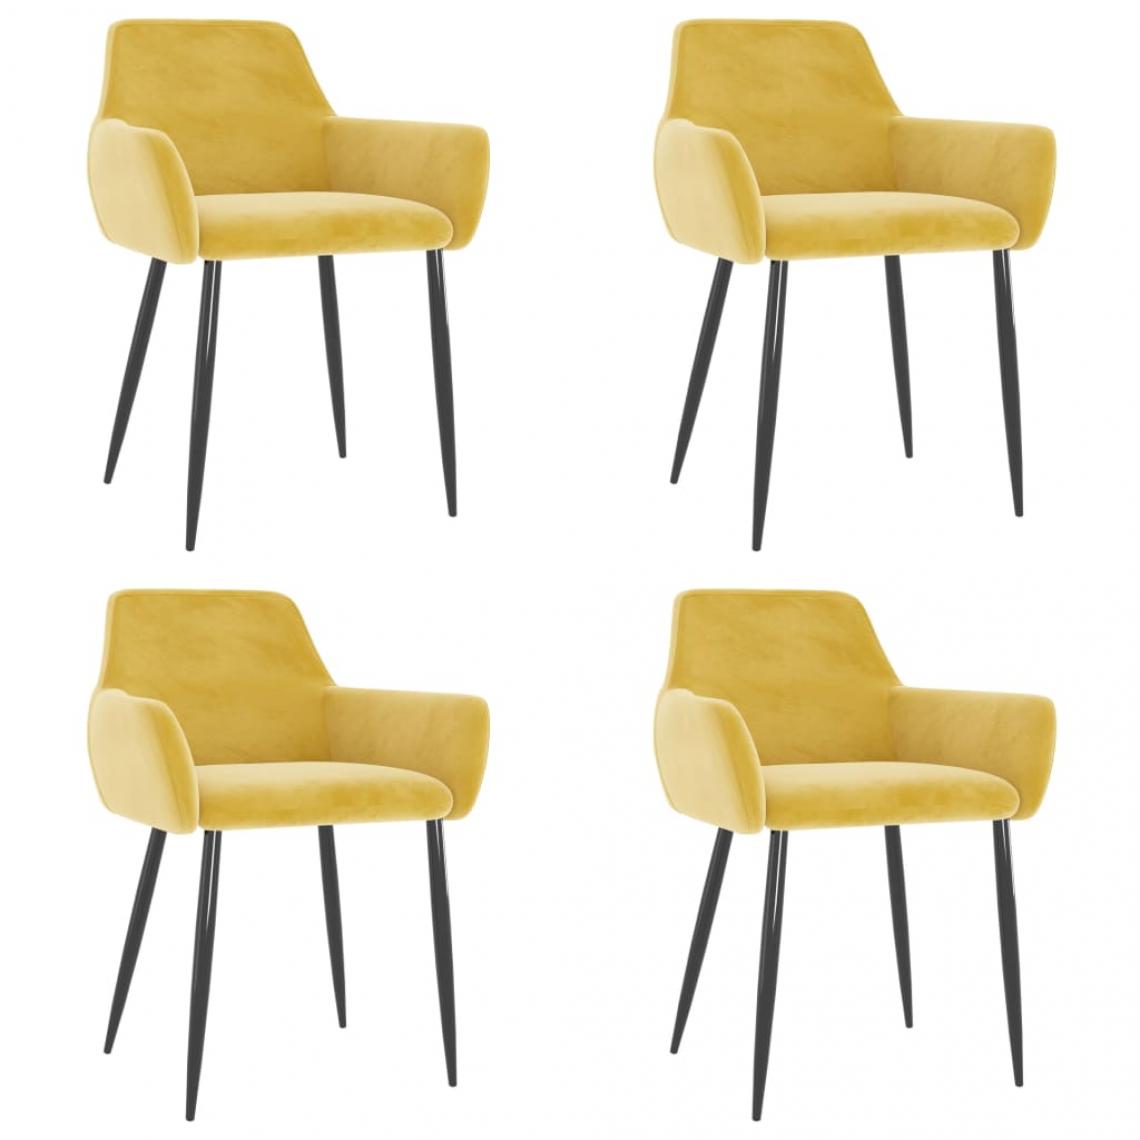 Decoshop26 - Lot de 4 chaises de salle à manger cuisine design moderne velours jaune moutarde CDS021630 - Chaises